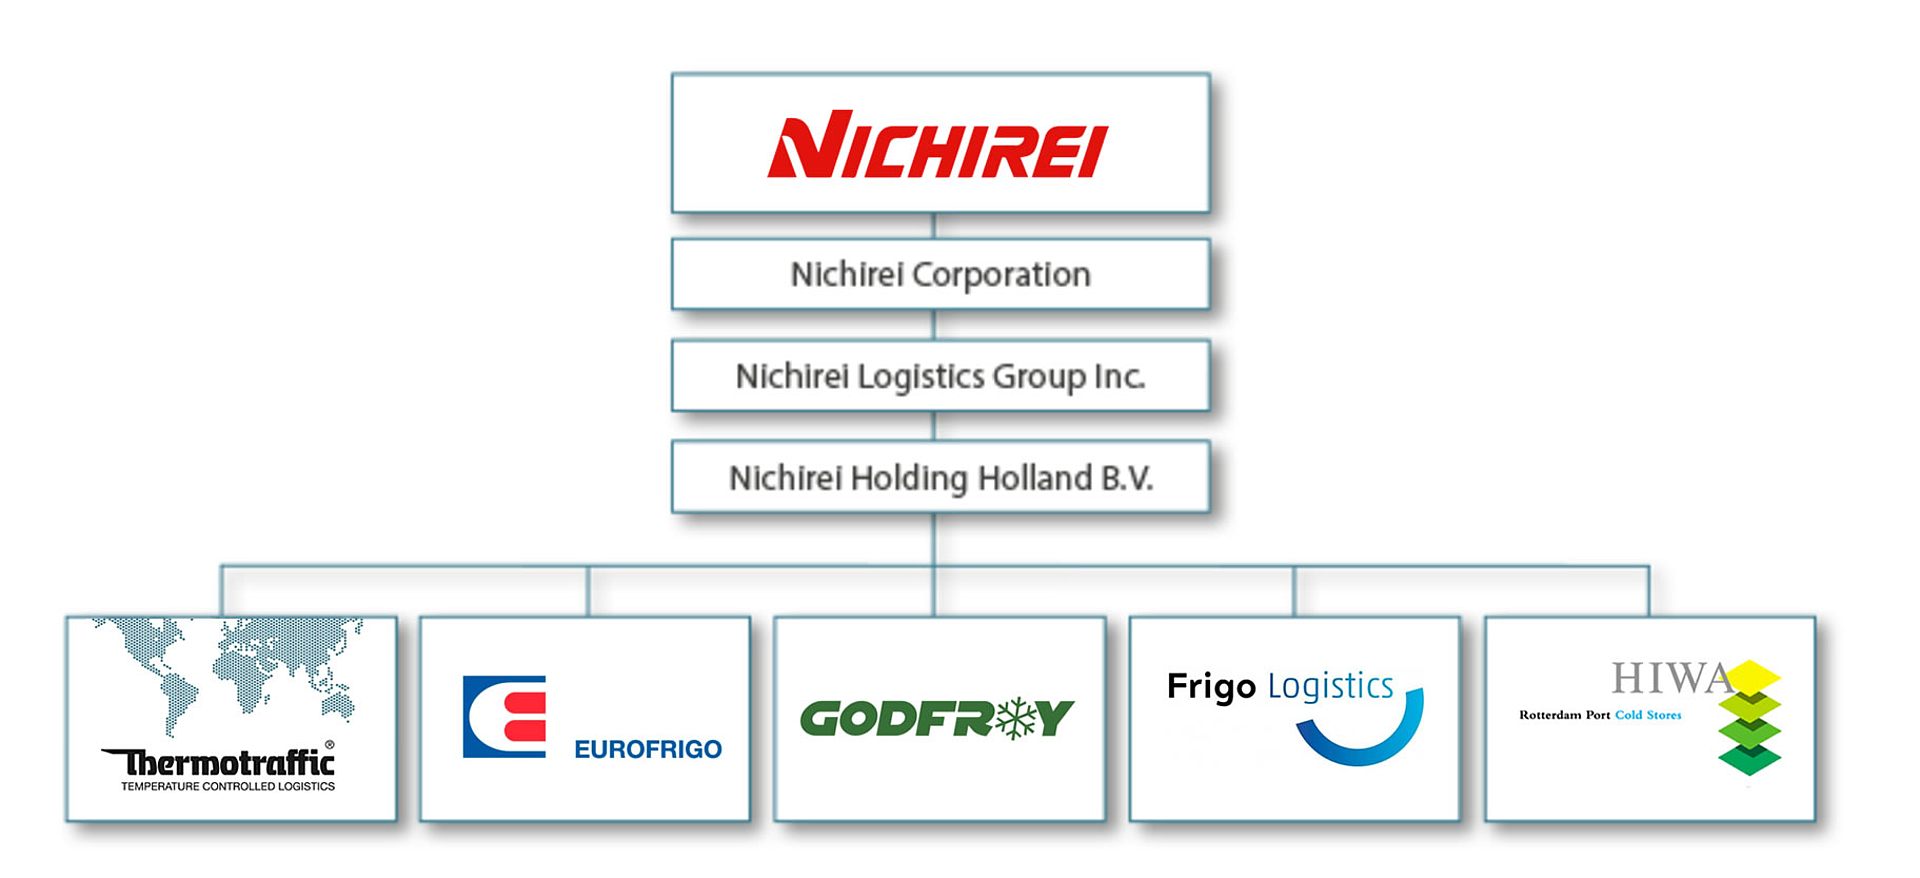 Nichirei Corporation – network in Europe